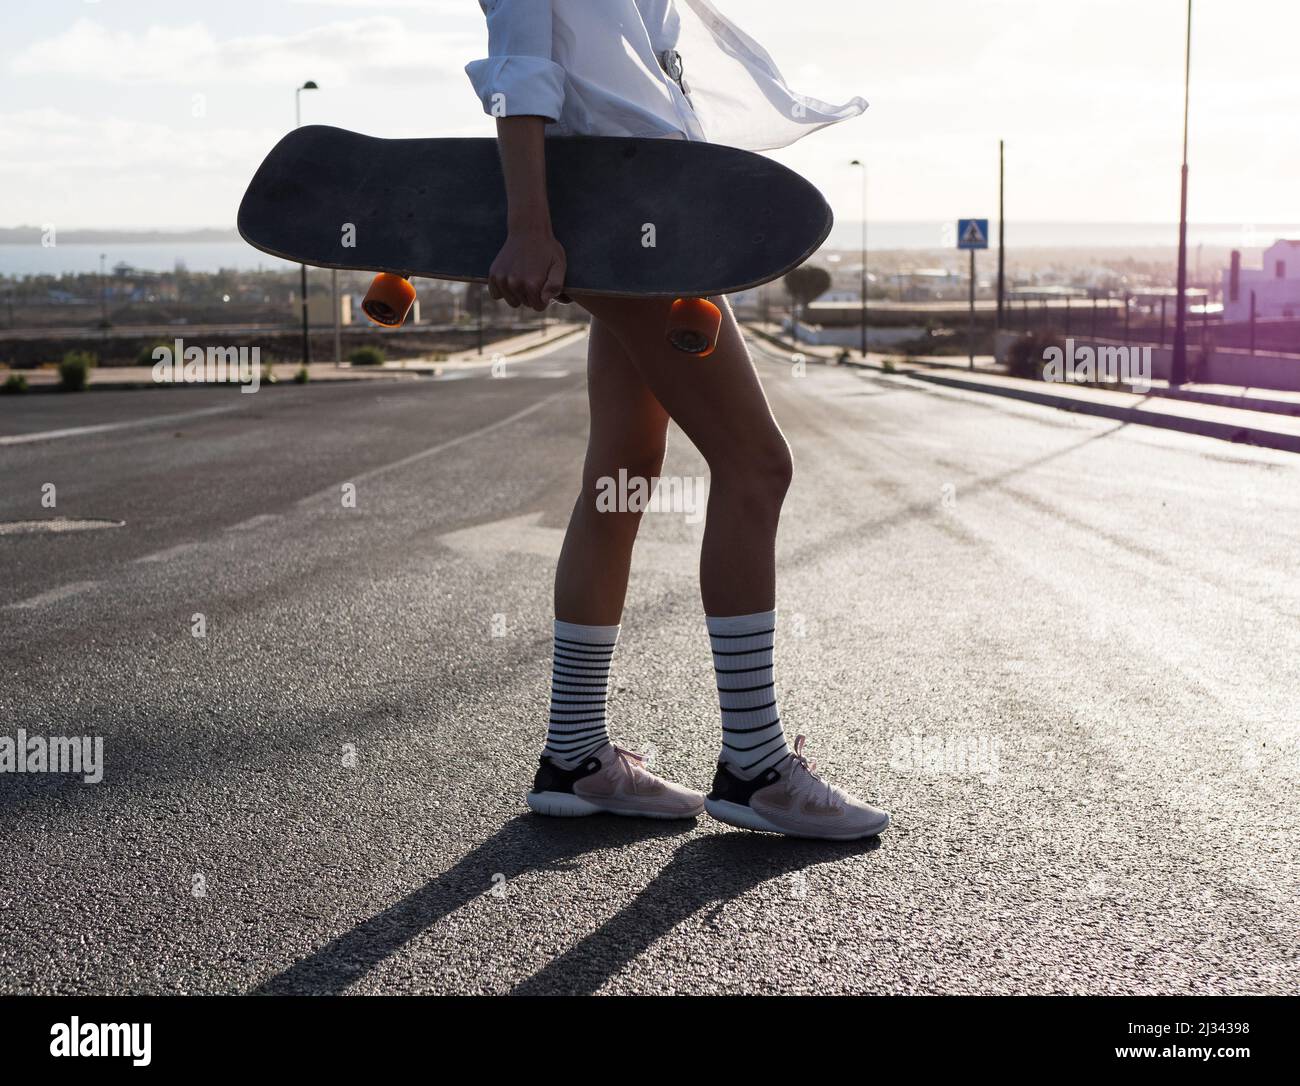 Unbekanntes Skatermädchen, das auf der Straße steht, Skateboard hält, Shorts und gestreifte Socken trägt Stockfoto